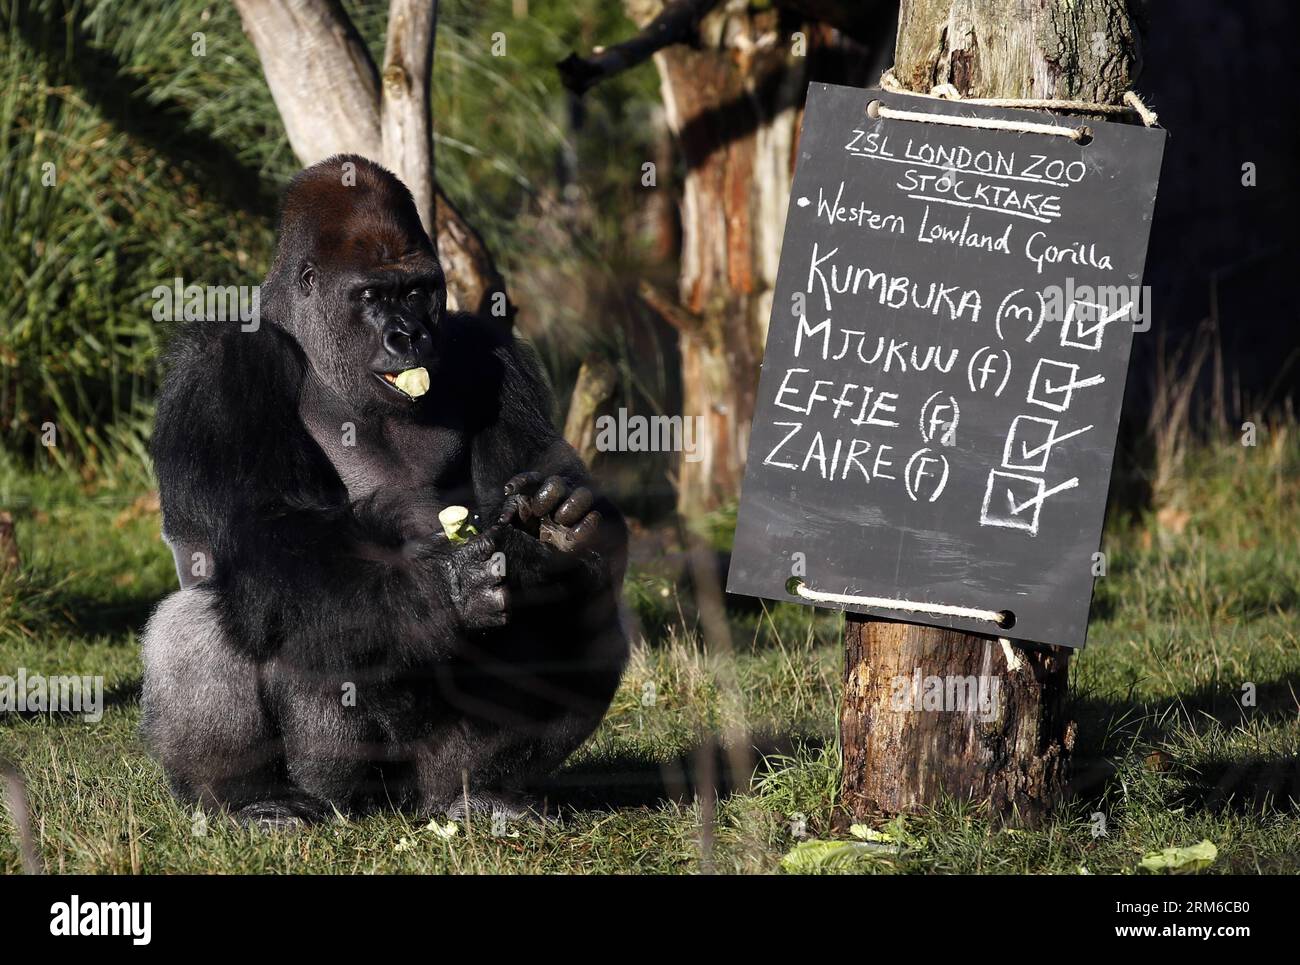 (140102) -- LONDRA, 2 gennaio 2014 (Xinhua) -- Kumbuka, un gorilla di pianura occidentale di silverback mangia accanto al tabellone durante lo stock annuale di animali dello ZSL London Zoo a Londra, in Gran Bretagna, il 2 gennaio 2014. Lo stock annuale dello zoo richiede ai detentori di controllare il numero di ciascuna delle più di 800 specie uniche, compresi invertebrati, uccelli, pesci, mammiferi, rettile e anfibio. Il conteggio obbligatorio è richiesto come parte della licenza dello zoo dello ZSL London Zoo e i risultati vengono registrati nel sistema informativo internazionale sulle specie (ISIS), dove i dati vengono condivisi con gli zoo intorno al Foto Stock